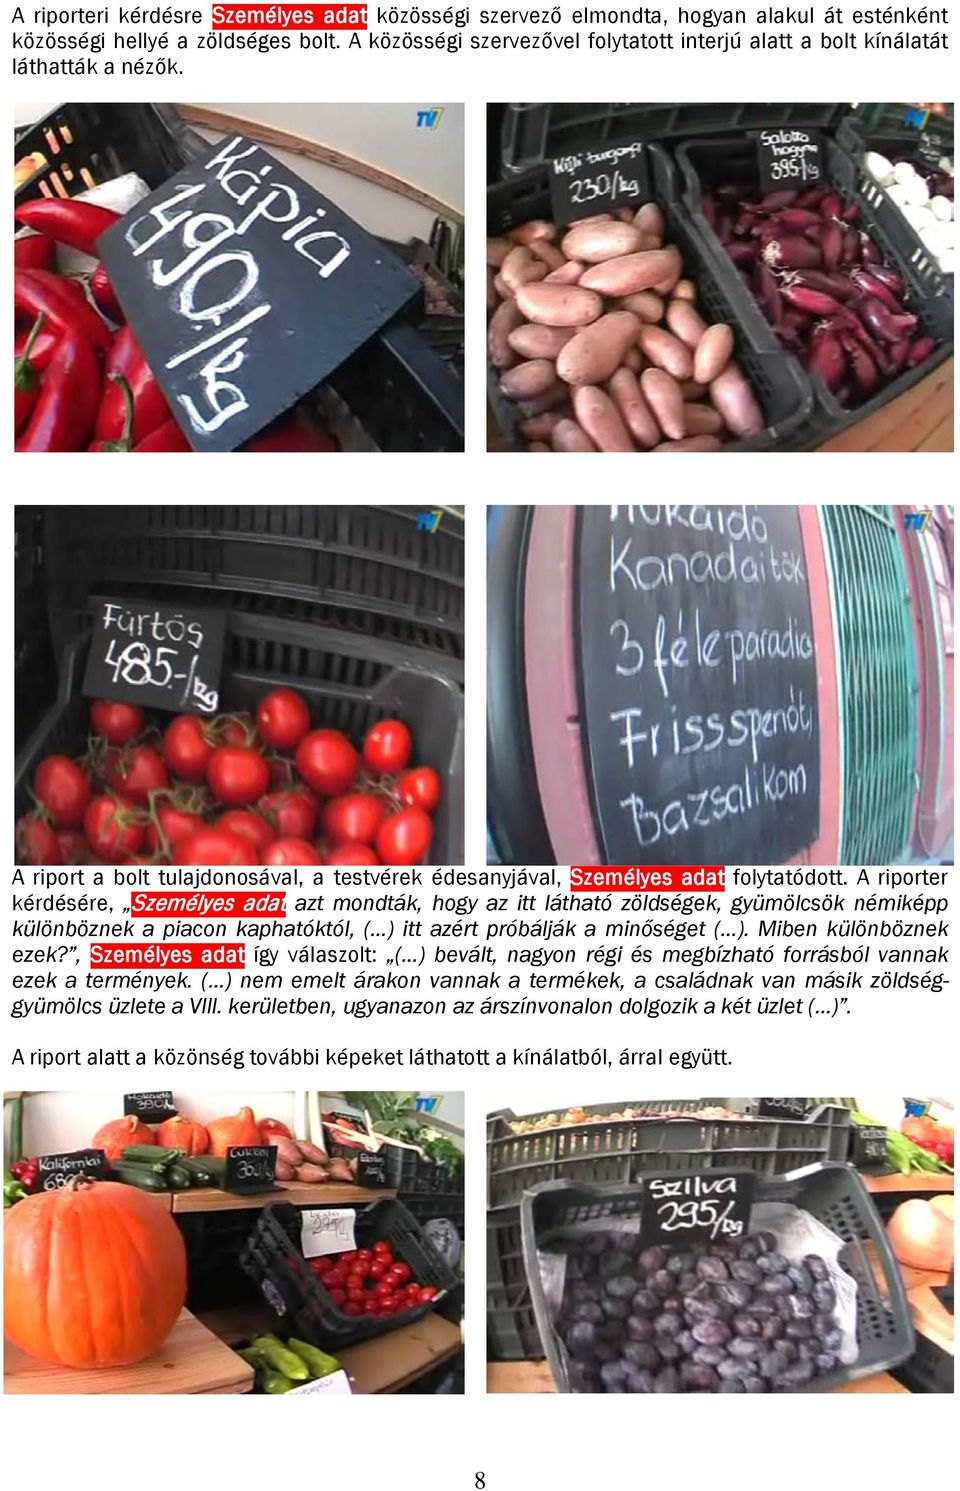 A riporter kérdésére, Személyes adat azt mondták, hogy az itt látható zöldségek, gyümölcsök némiképp különböznek a piacon kaphatóktól, ( ) itt azért próbálják a minőséget ( ). Miben különböznek ezek?